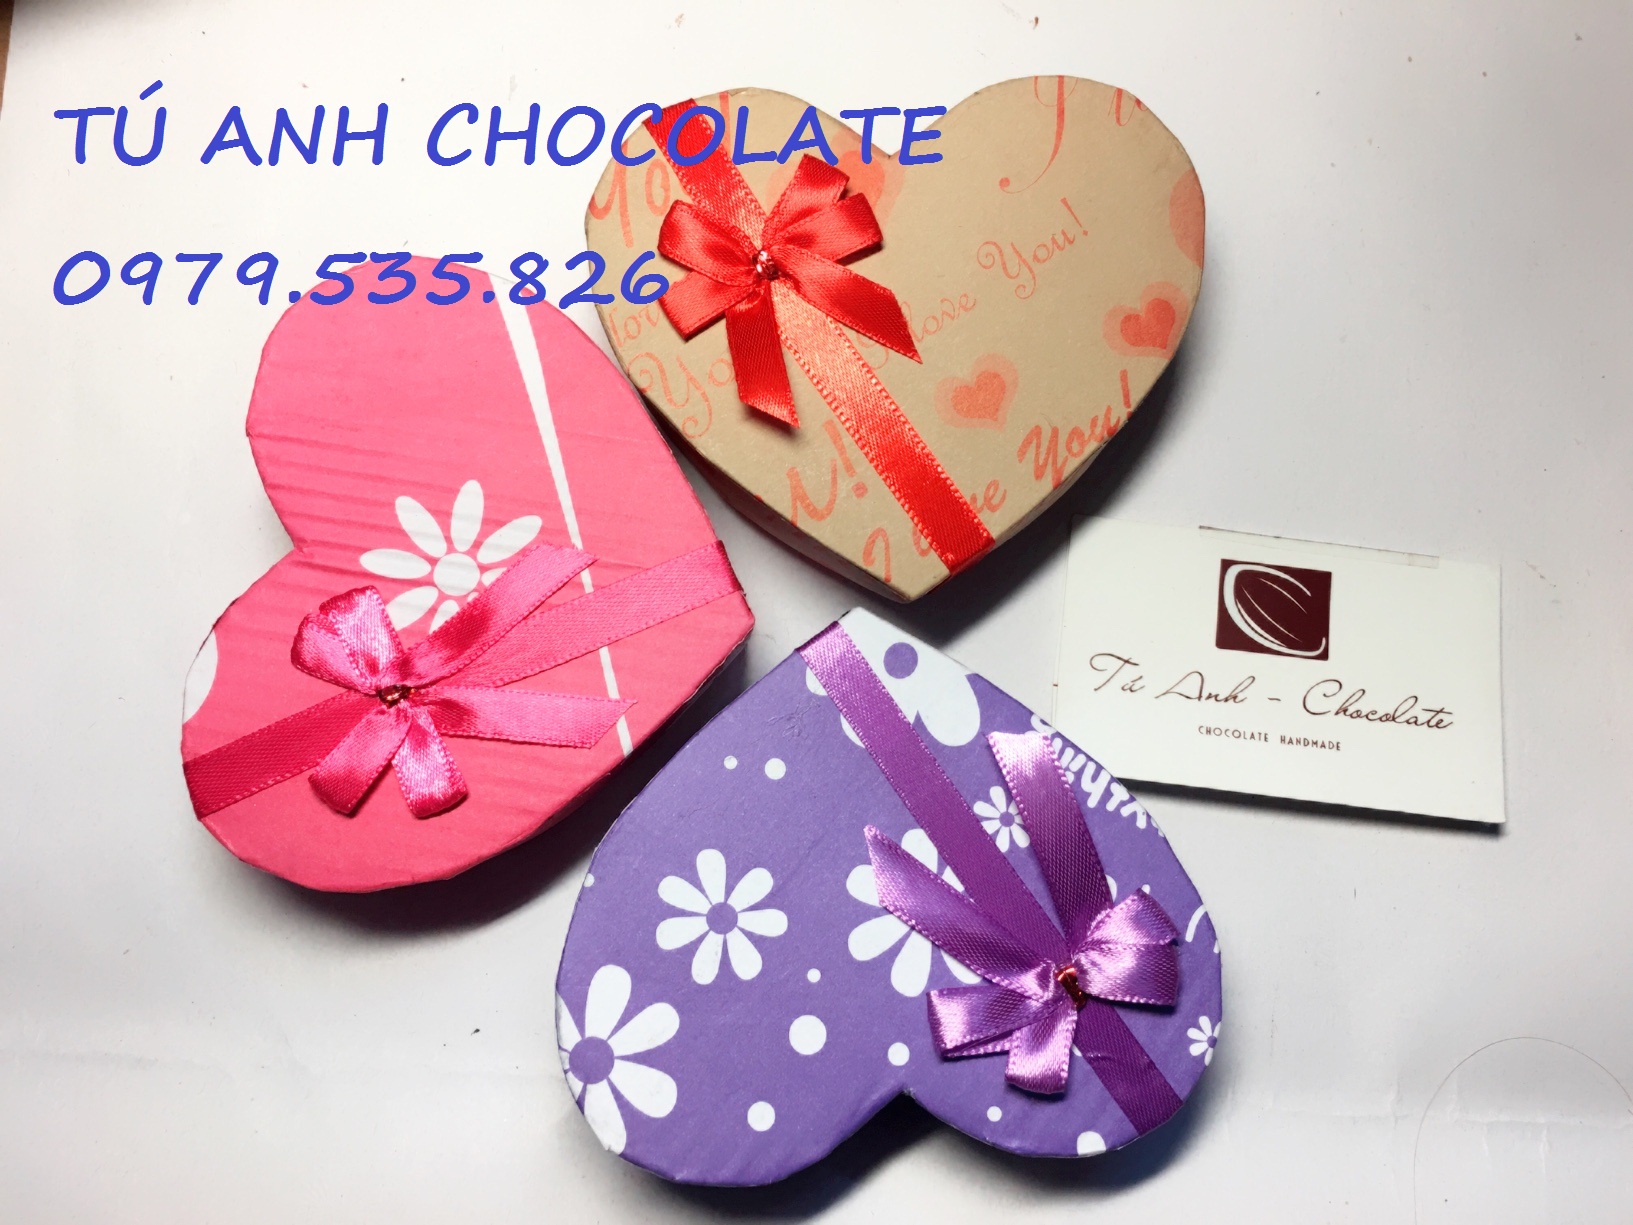 1000 mẫu hộp đựng socola valentine mới nhất - TÚ ANH CHOCOLATE